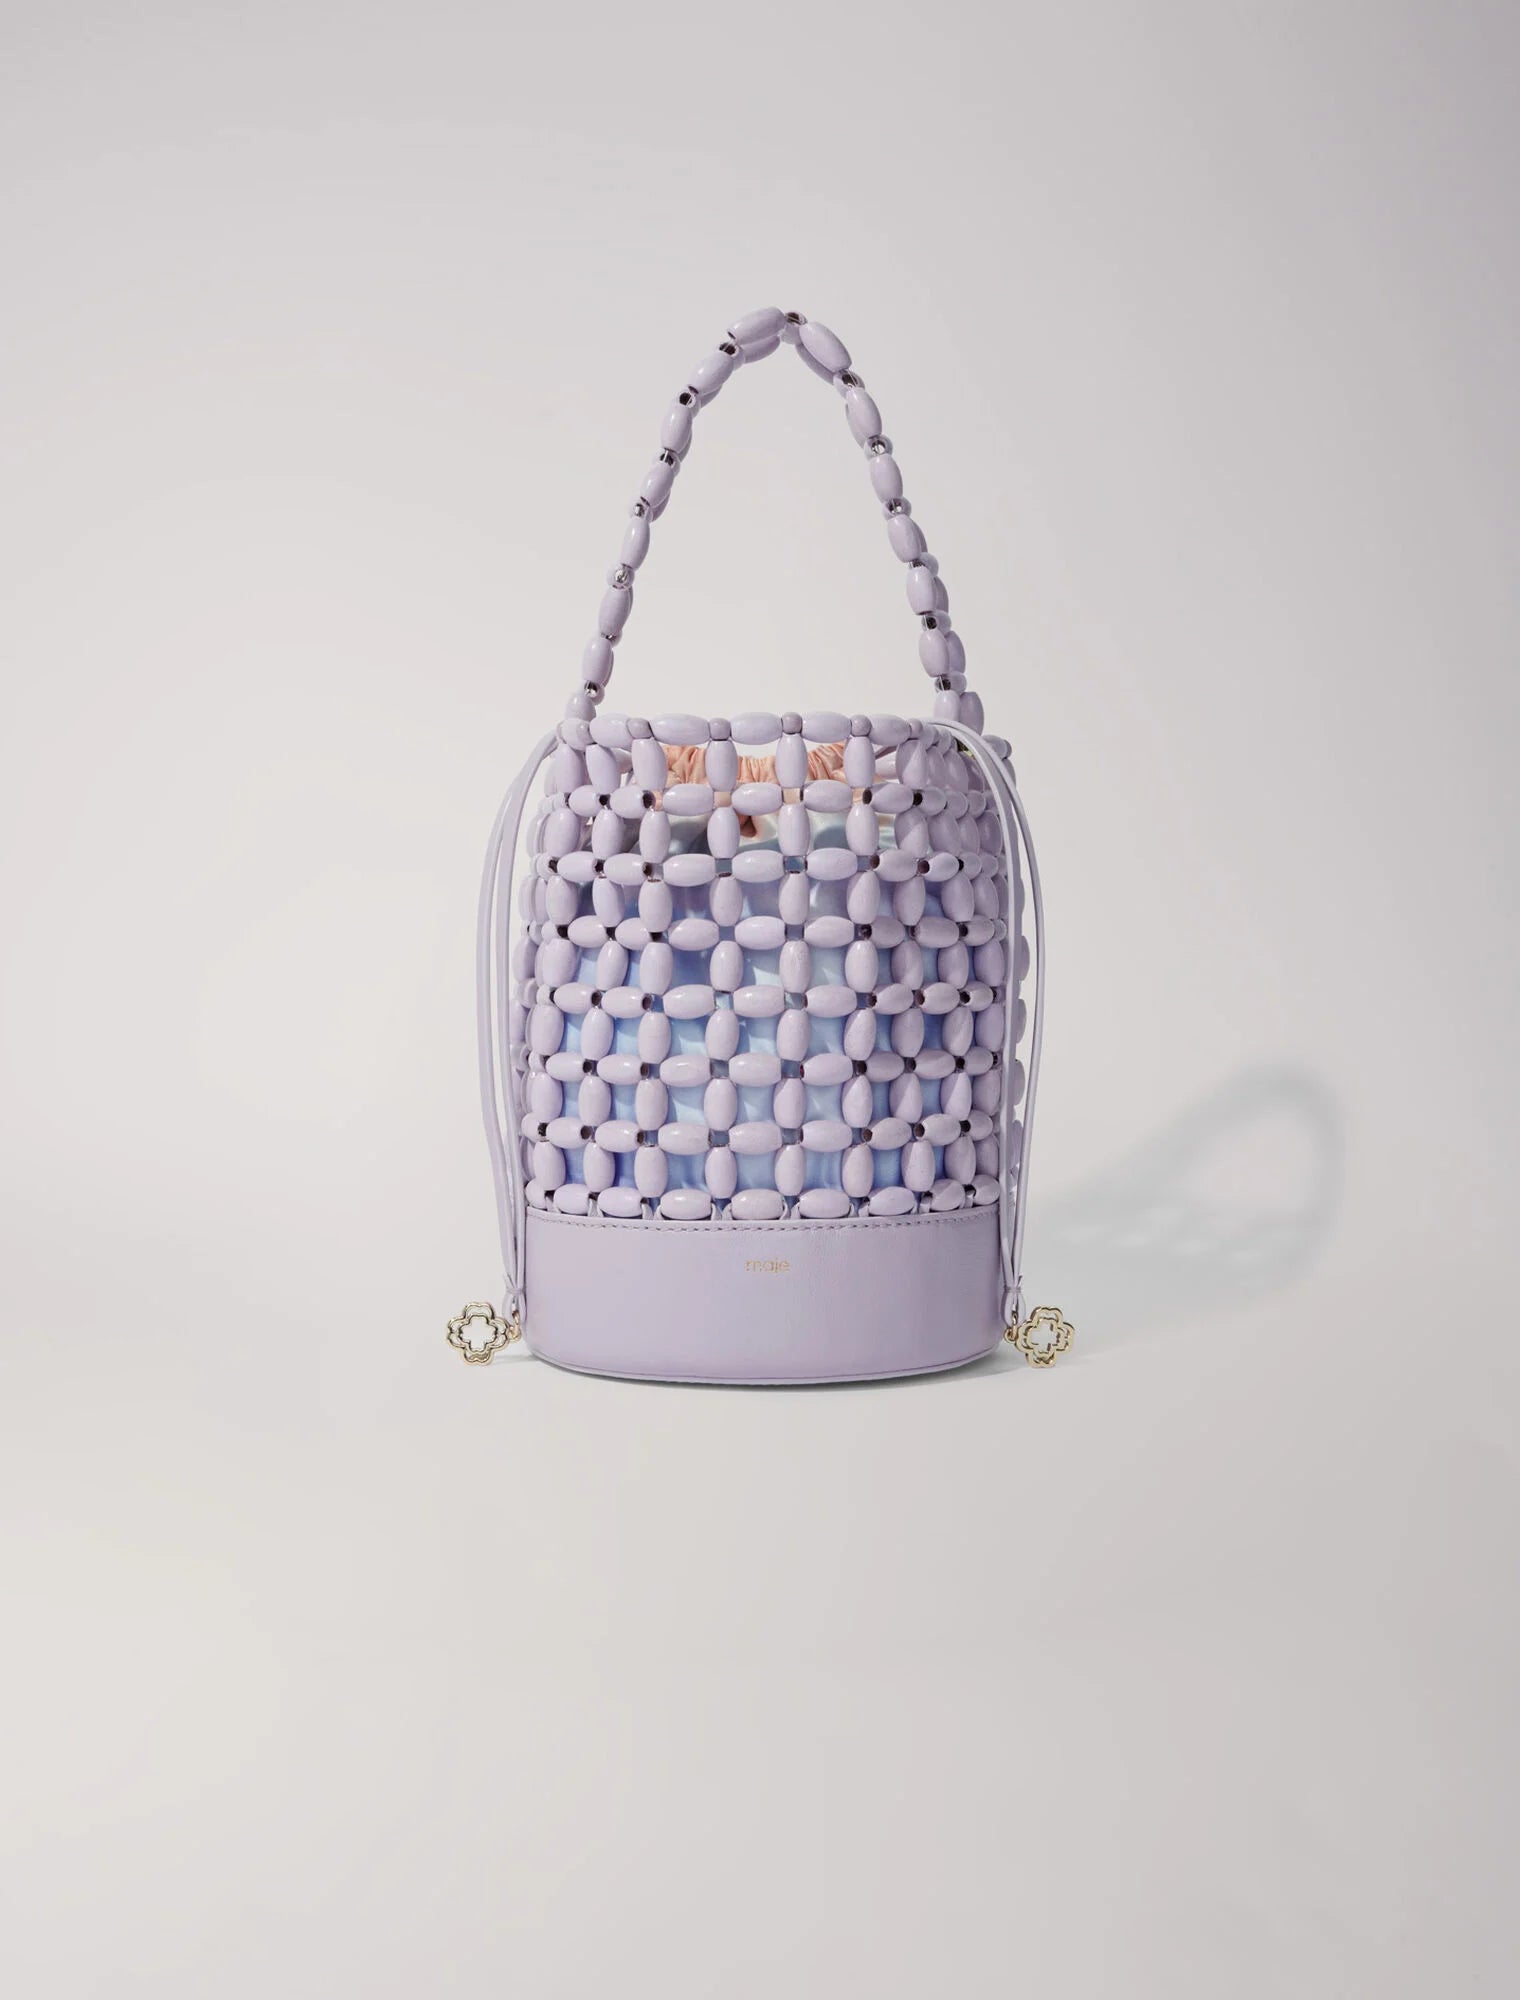 Bucket bag embellished with beads